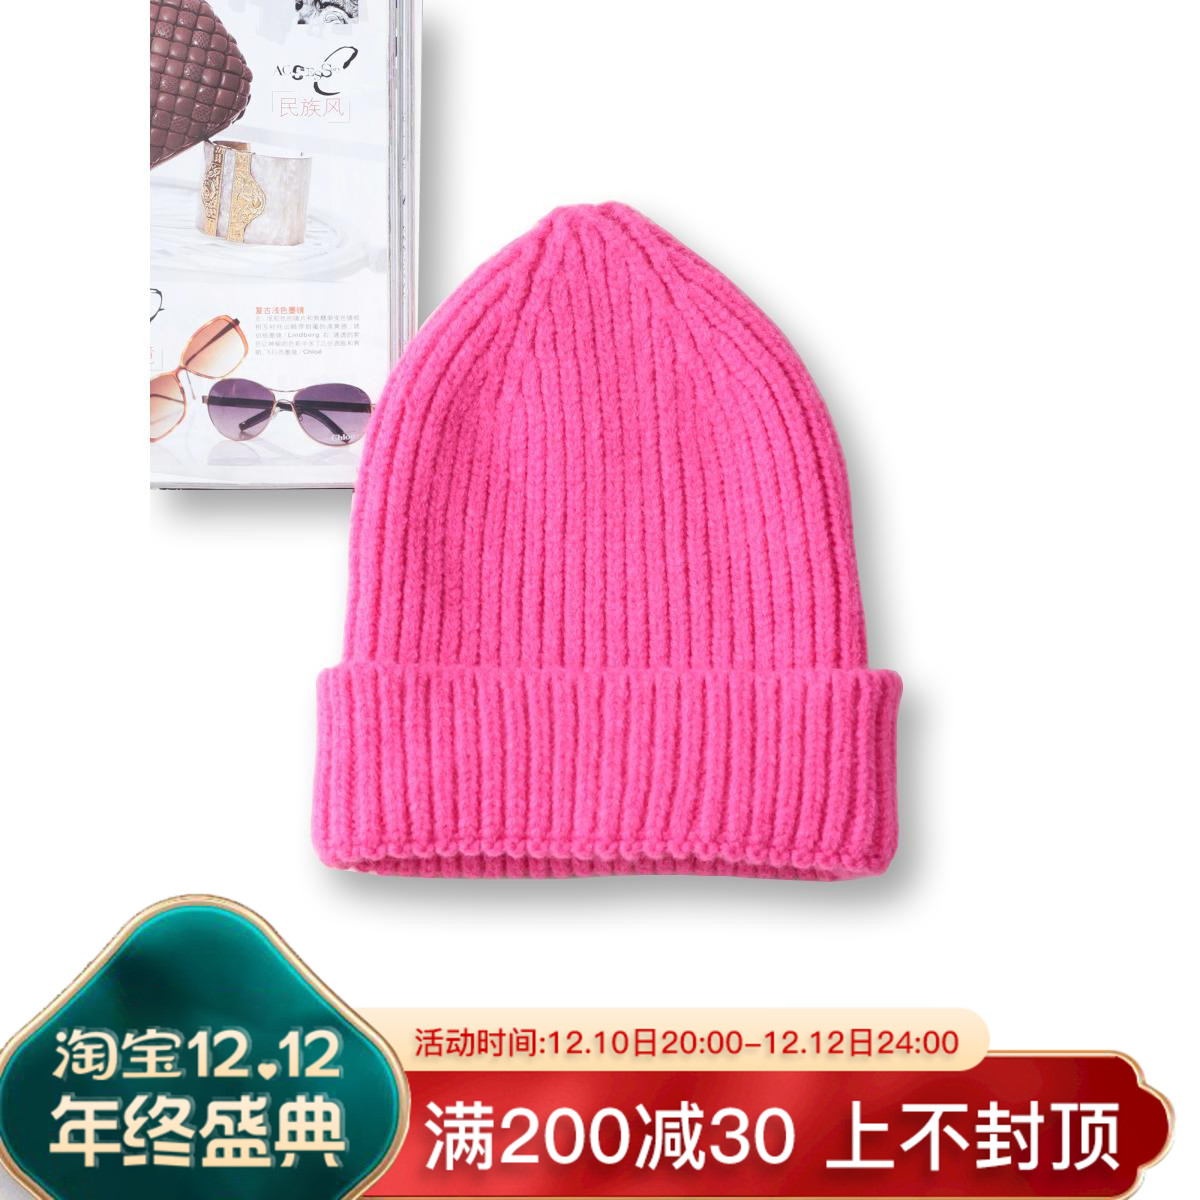 アイボリー 帽子 男女兼用 トレンドキャップ 韓国 ロゴメンズレディース共通 - メルカリ